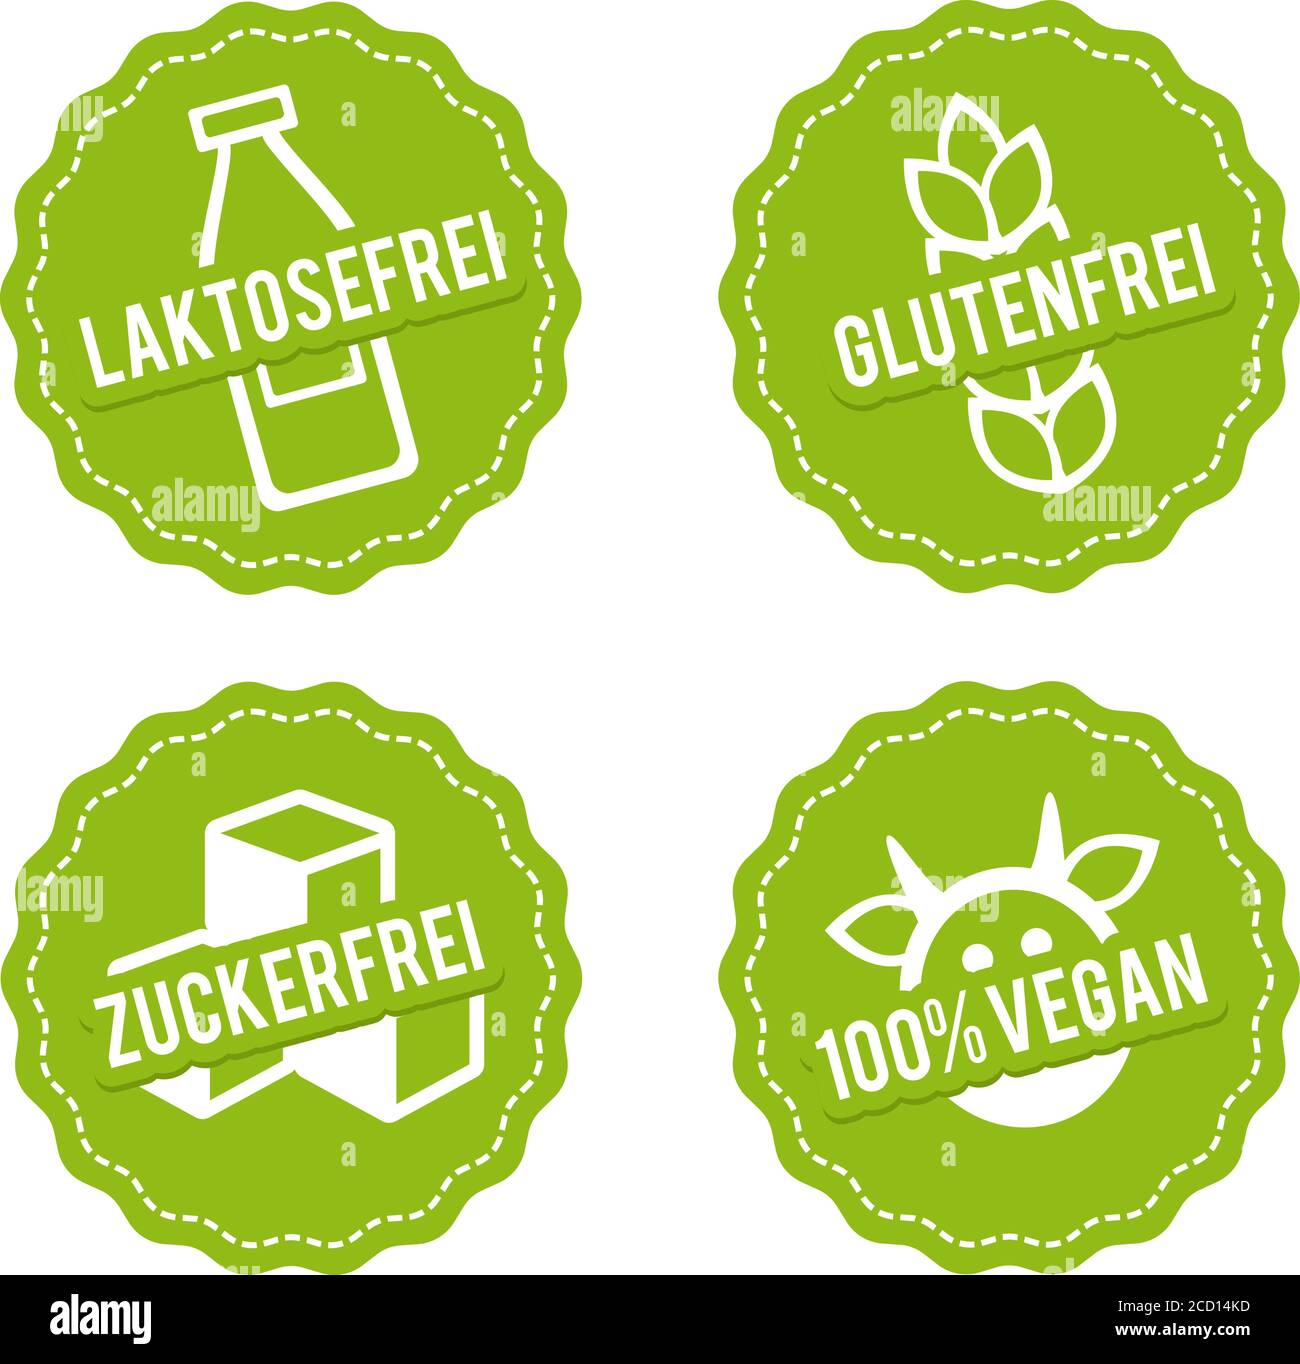 Vektor Symbole Vegan, Glutenfrei, Laktosefrei und Zuckerfrei. Stock Vector